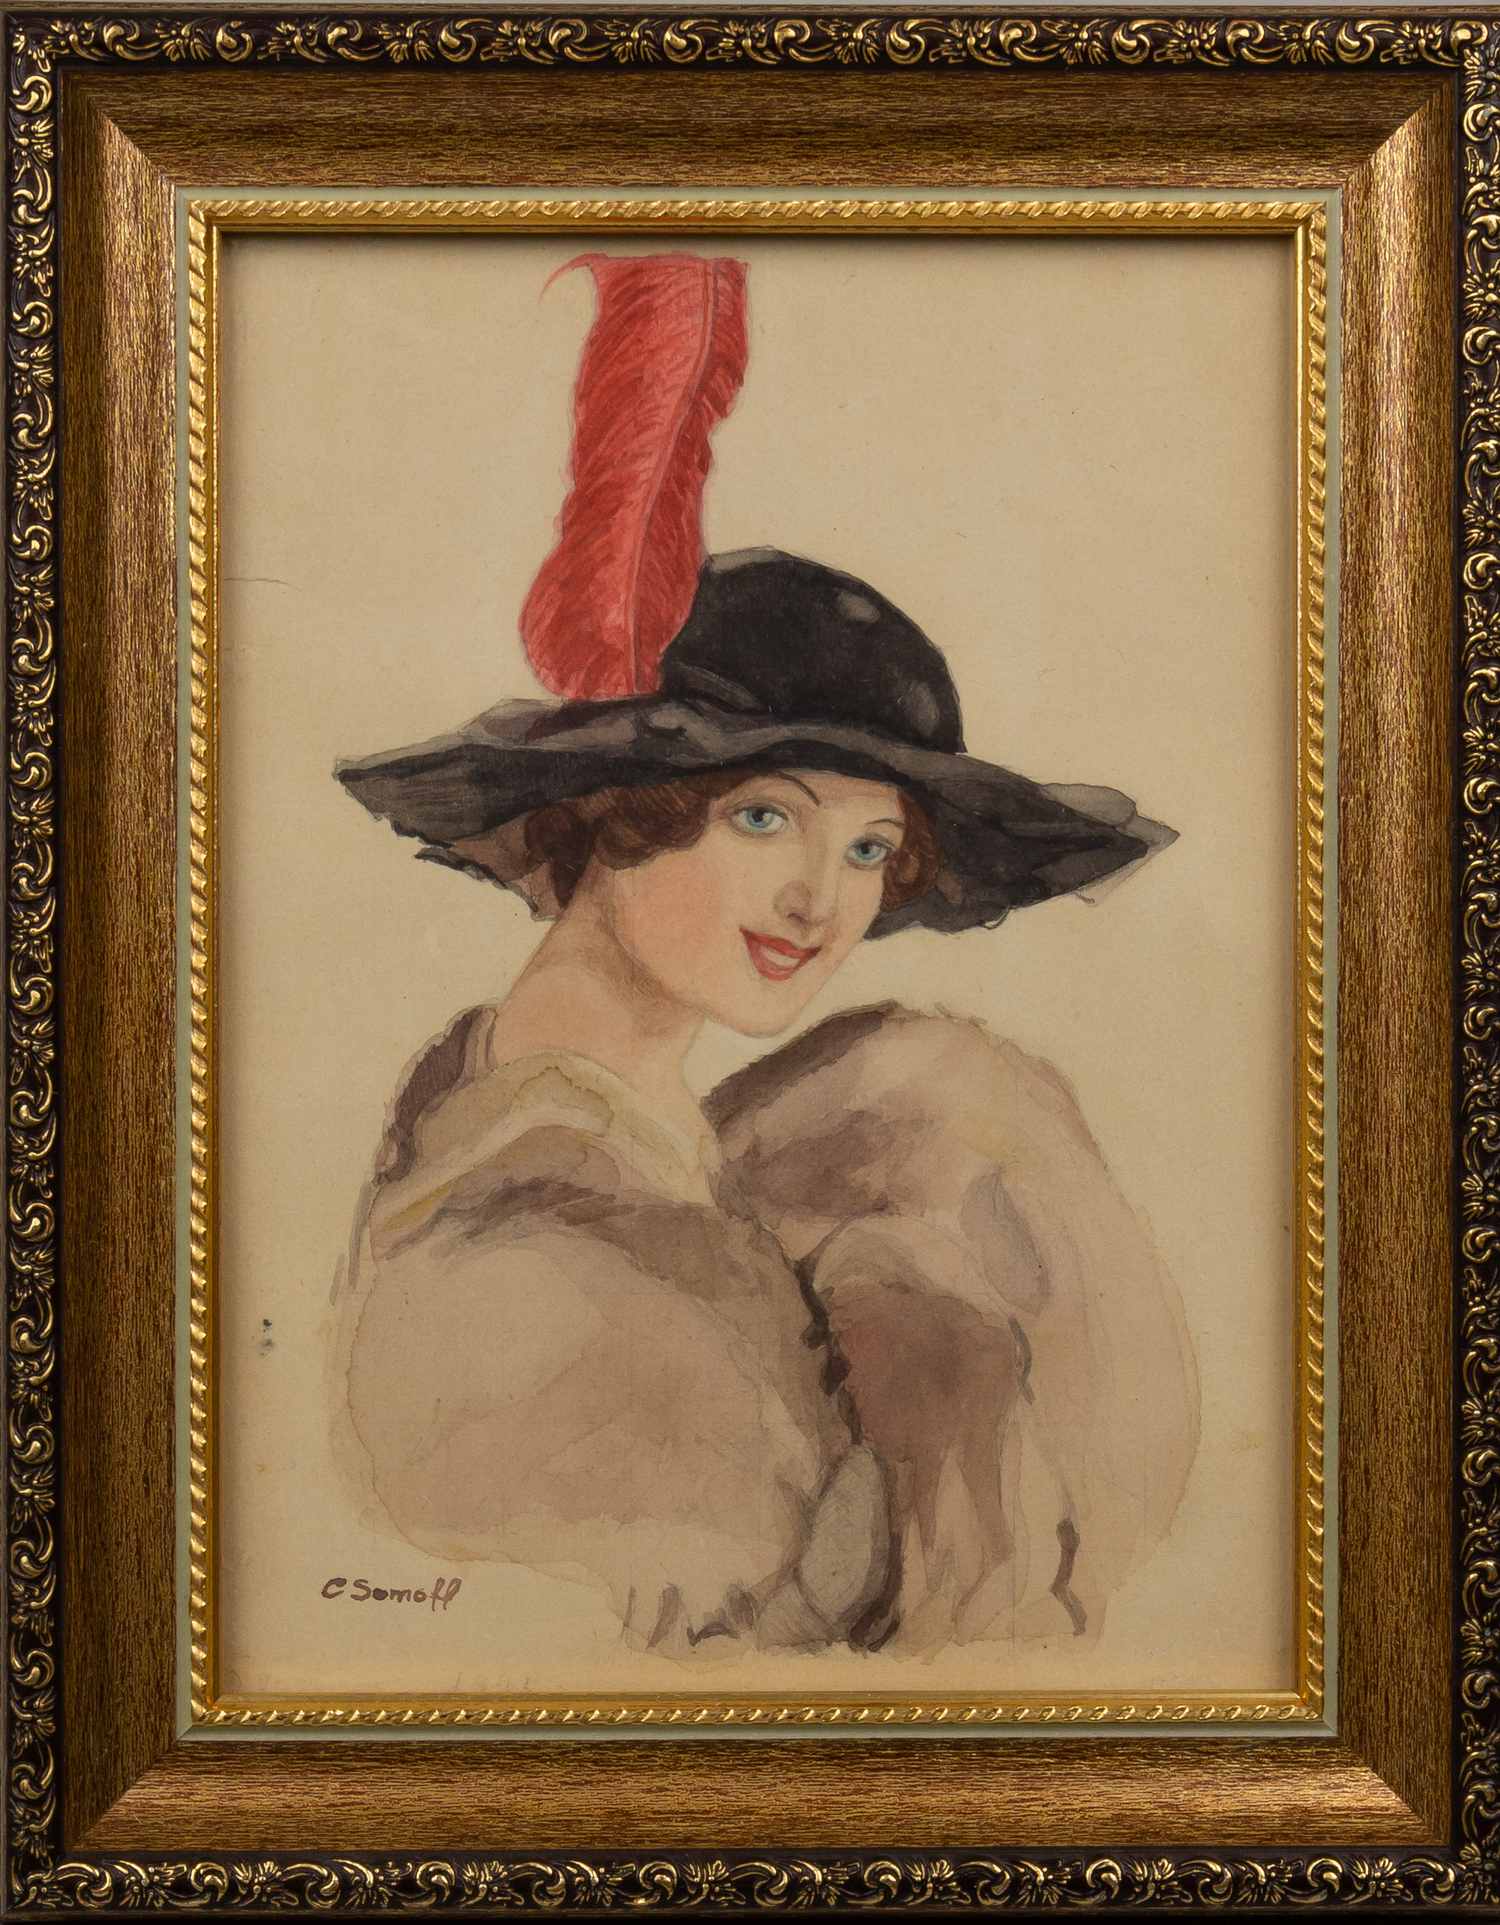 Сомов Константин Андреевич (?). Девушка в шляпе с пером. 1935.